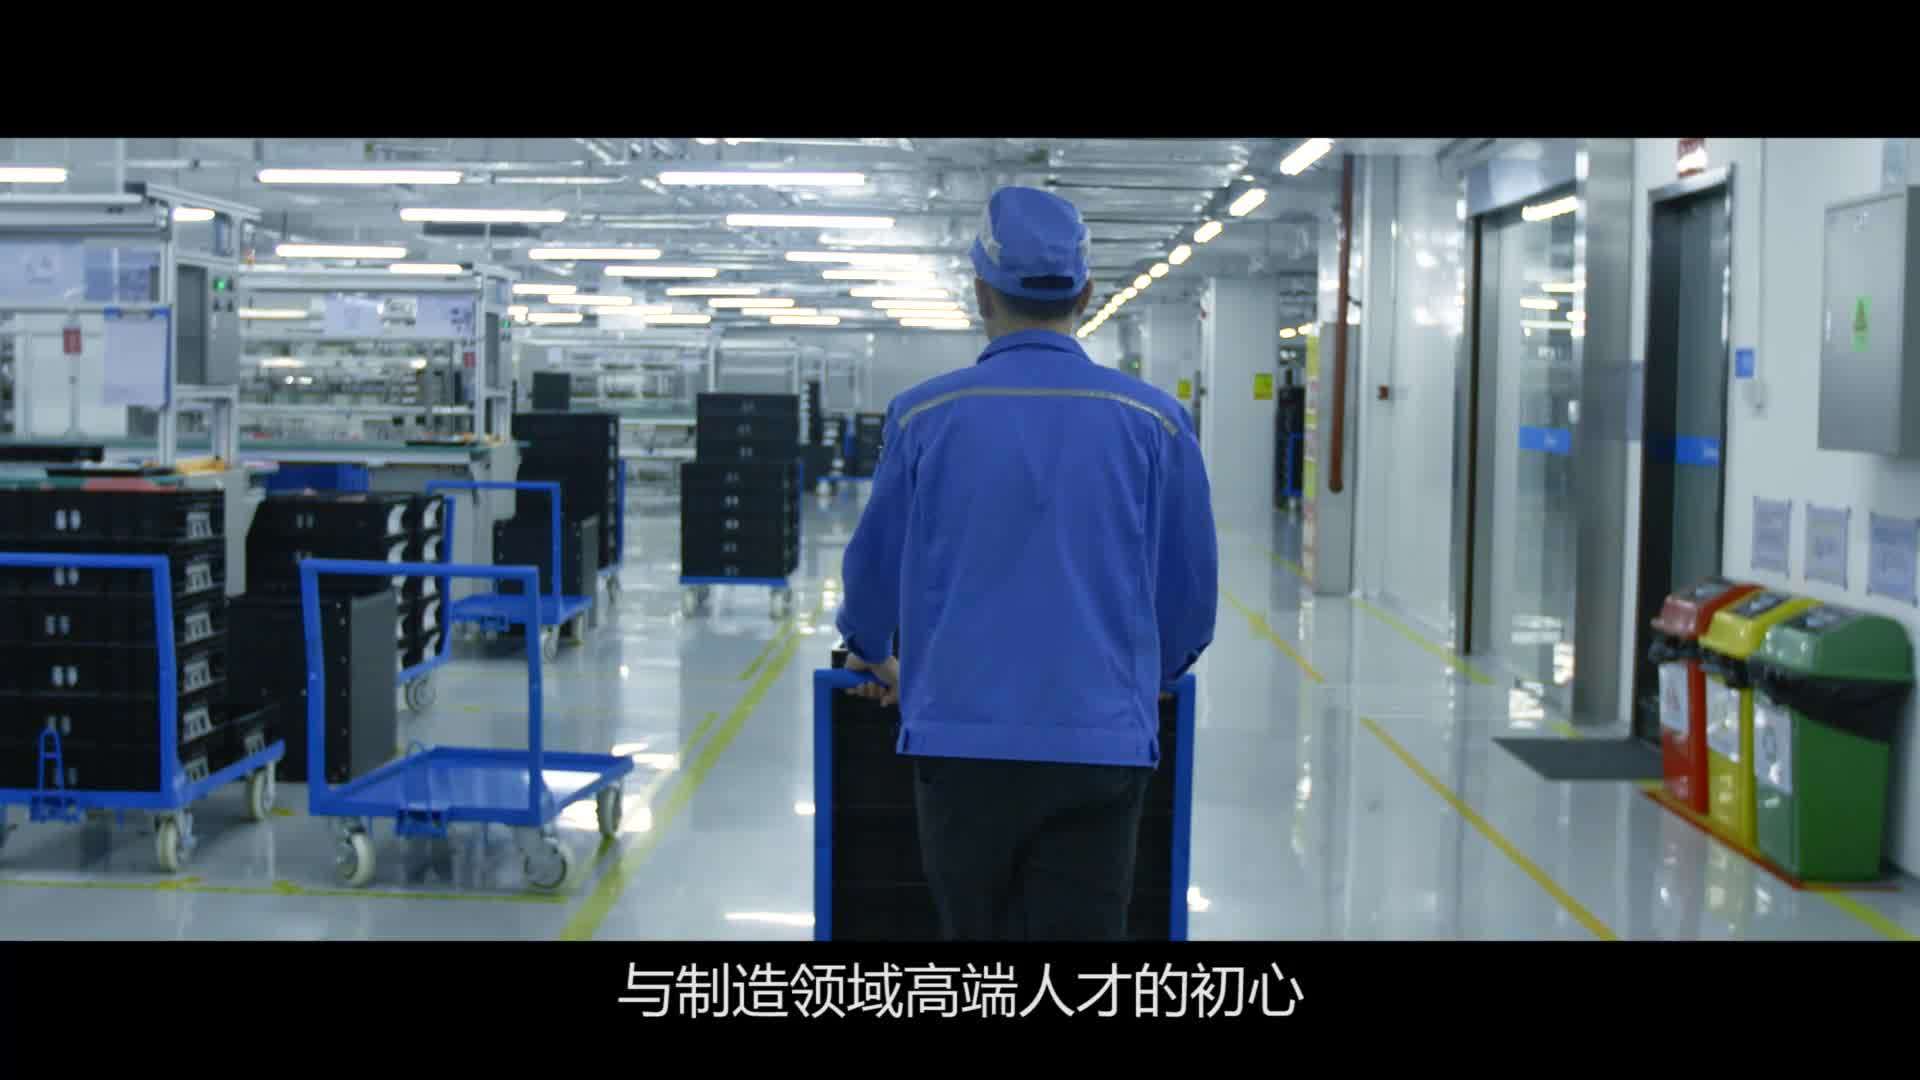 美的洗涤电器工厂:产销规模亚洲第一,打造国家级5g智慧工厂